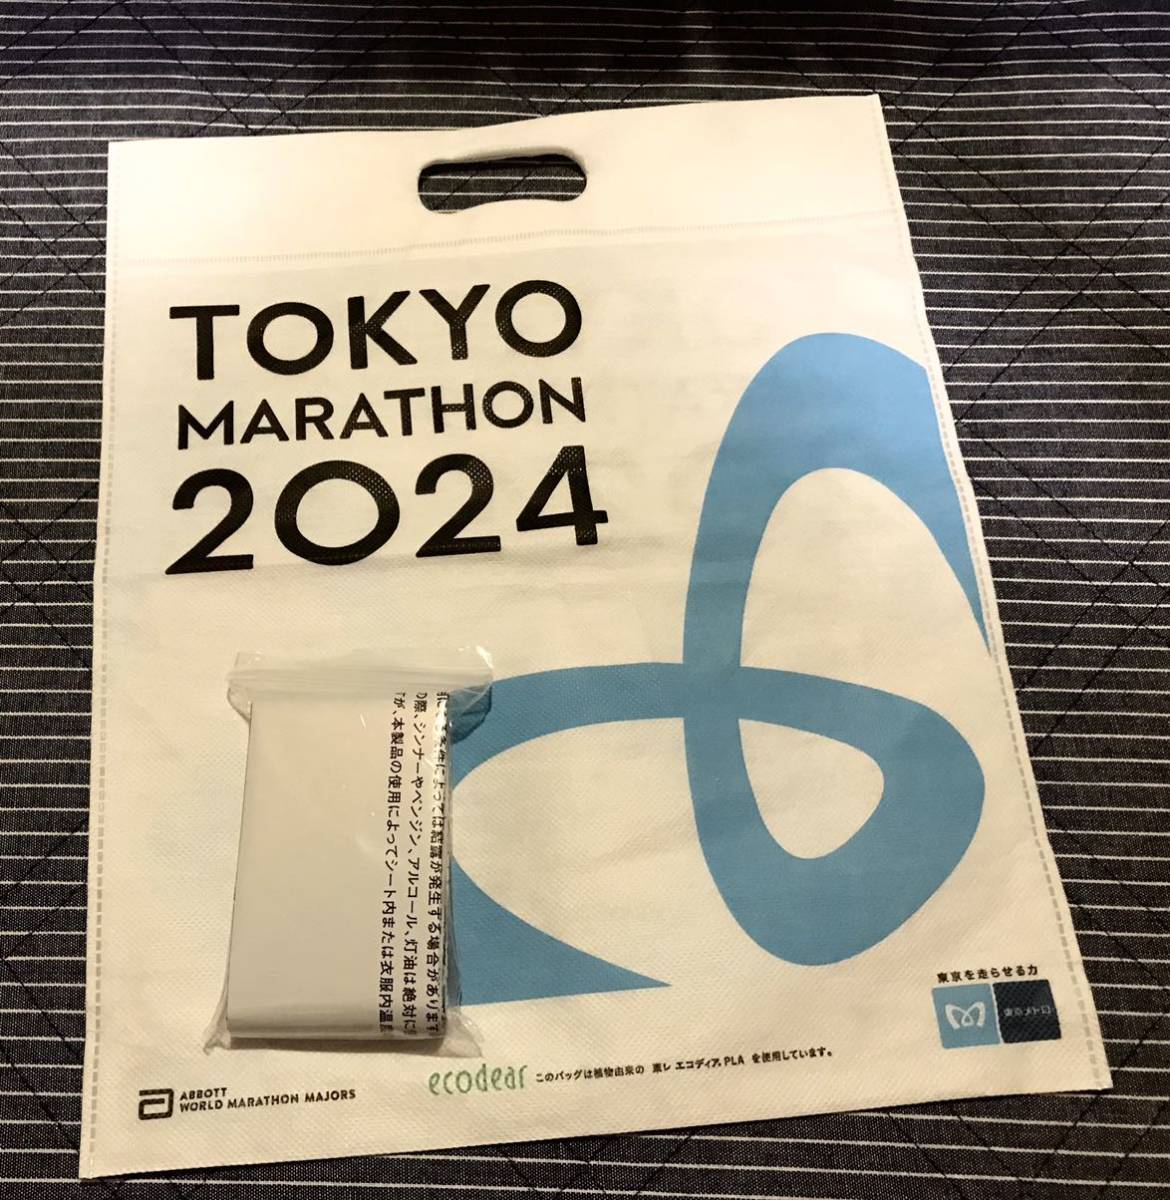  не использовался дополнение * Tokyo марафон 2024 финишная отделка полотенце пончо, aluminium сиденье * Runner пончо * Runner low b* aluminium дождевик 